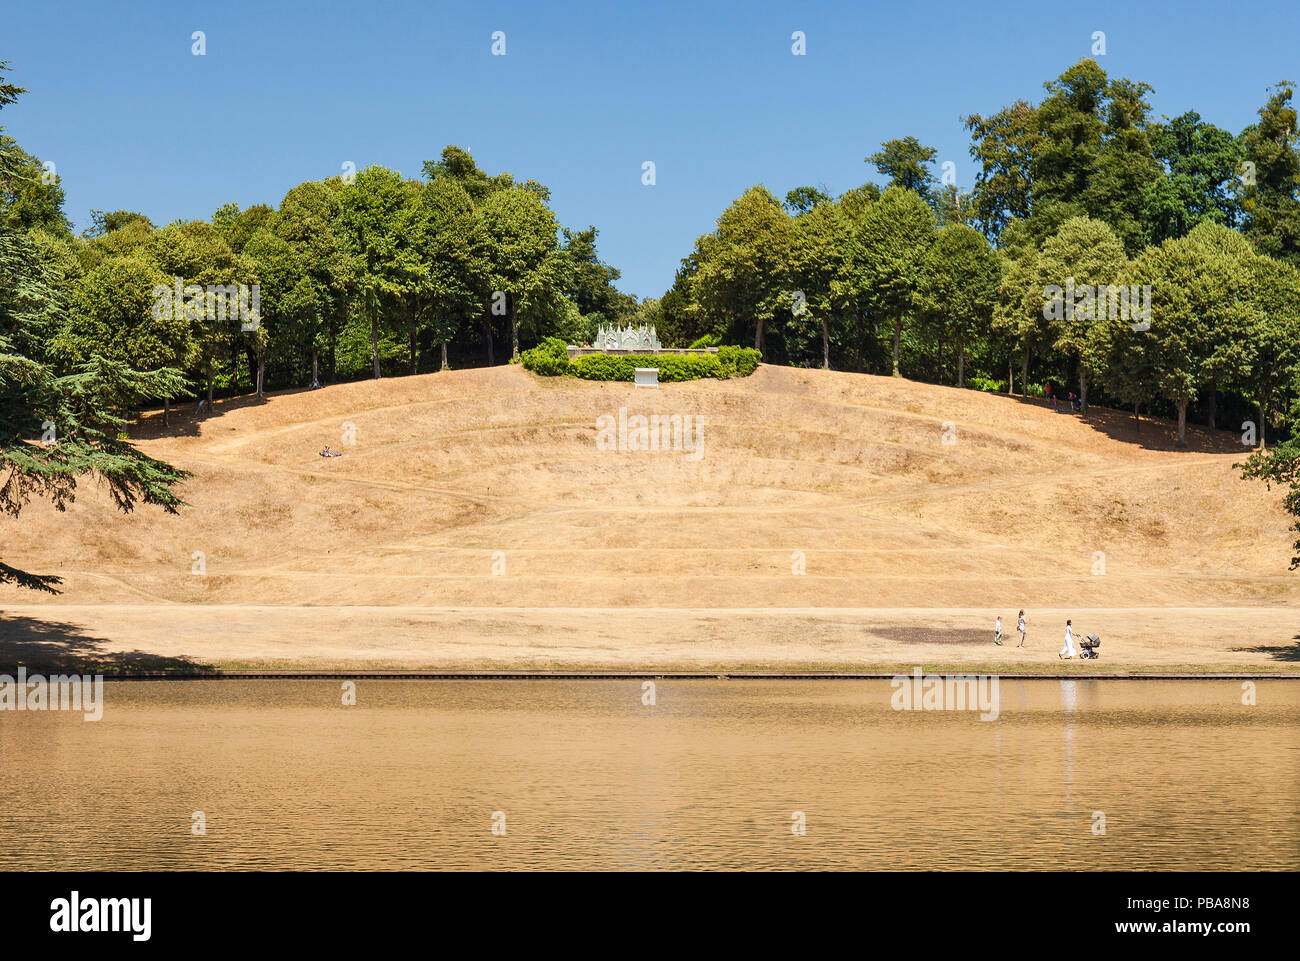 Jardin paysage Claremont amphithéâtre, d'herbe desséchée en été de 2018. Banque D'Images